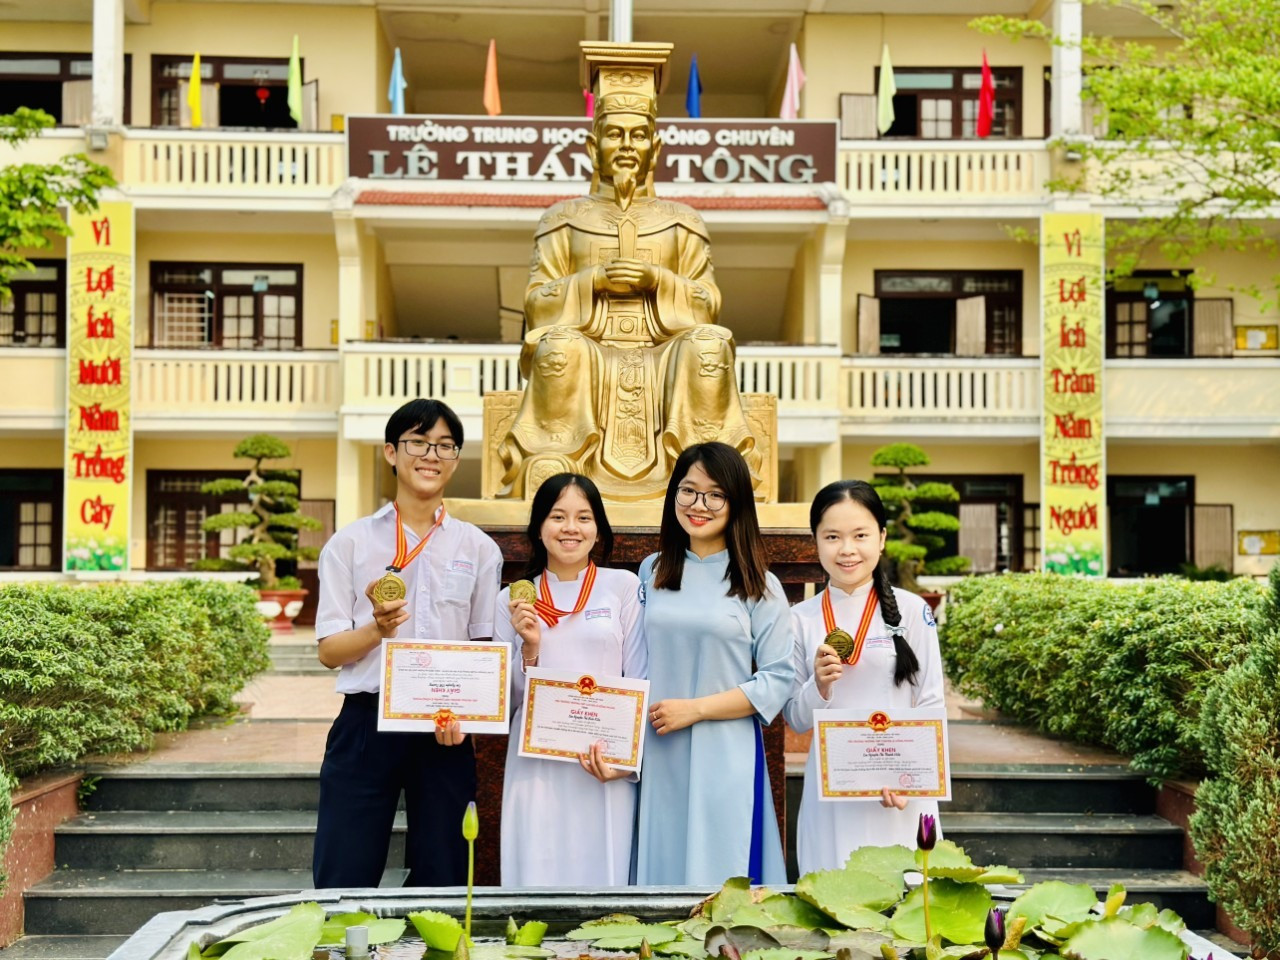 Nguyễn Viết Trường (ngoài cùng) học sinh đoạt Huy chương Vàng và là thí sinh có điểm cao nhất toàn đoàn môn Ngữ văn 10, cùng cô giáo chủ nhiệm và các thành viên đoạt huy chương Vàng ở bộ môn này.